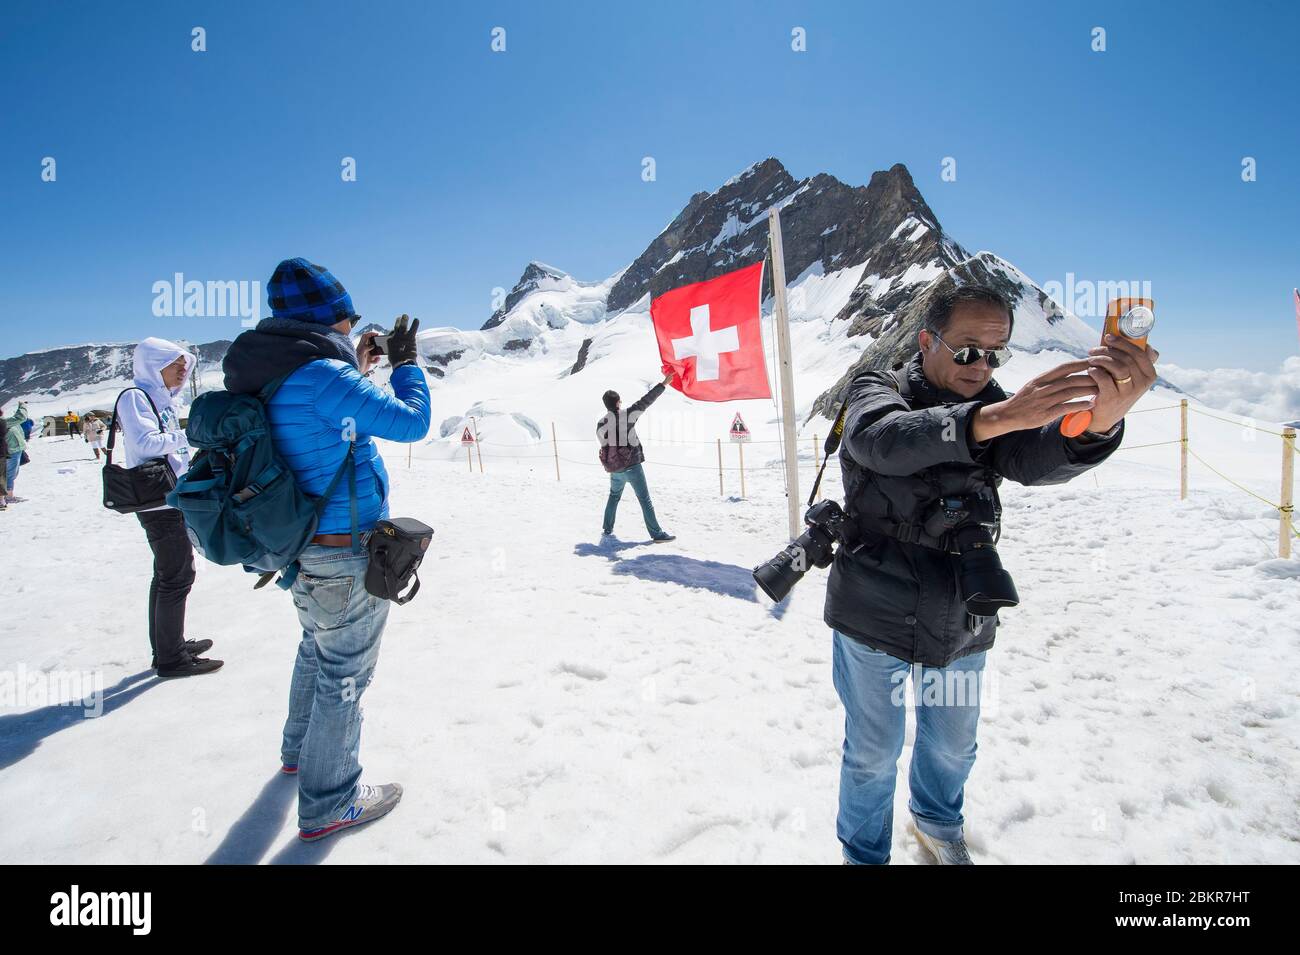 Svizzera, Oberland Bernese, Interlaken, Jungfrau Top of Europe pass, sessione fotografica improvvisata dagli asiatici sul ghiacciaio, Patrimonio dell'Umanità dell'UNESCO Foto Stock